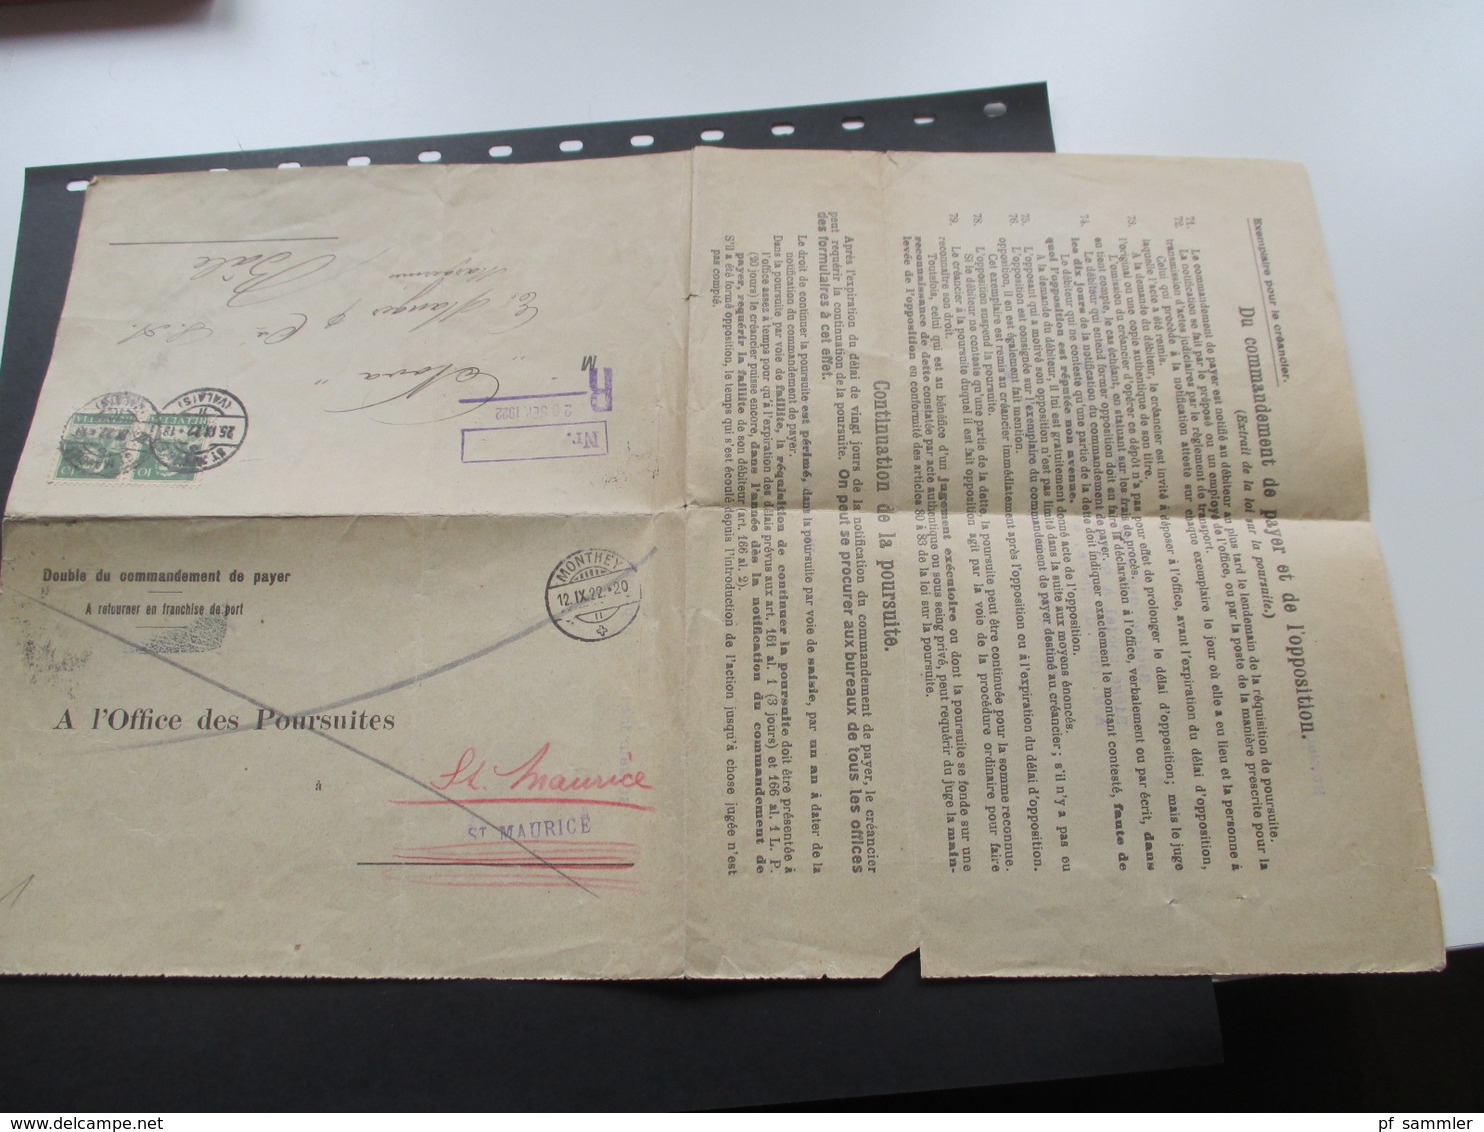 Schweiz Brief 1922 Formular doppelt verwendet! R-Brief. Double du commandement de payer. Monthey